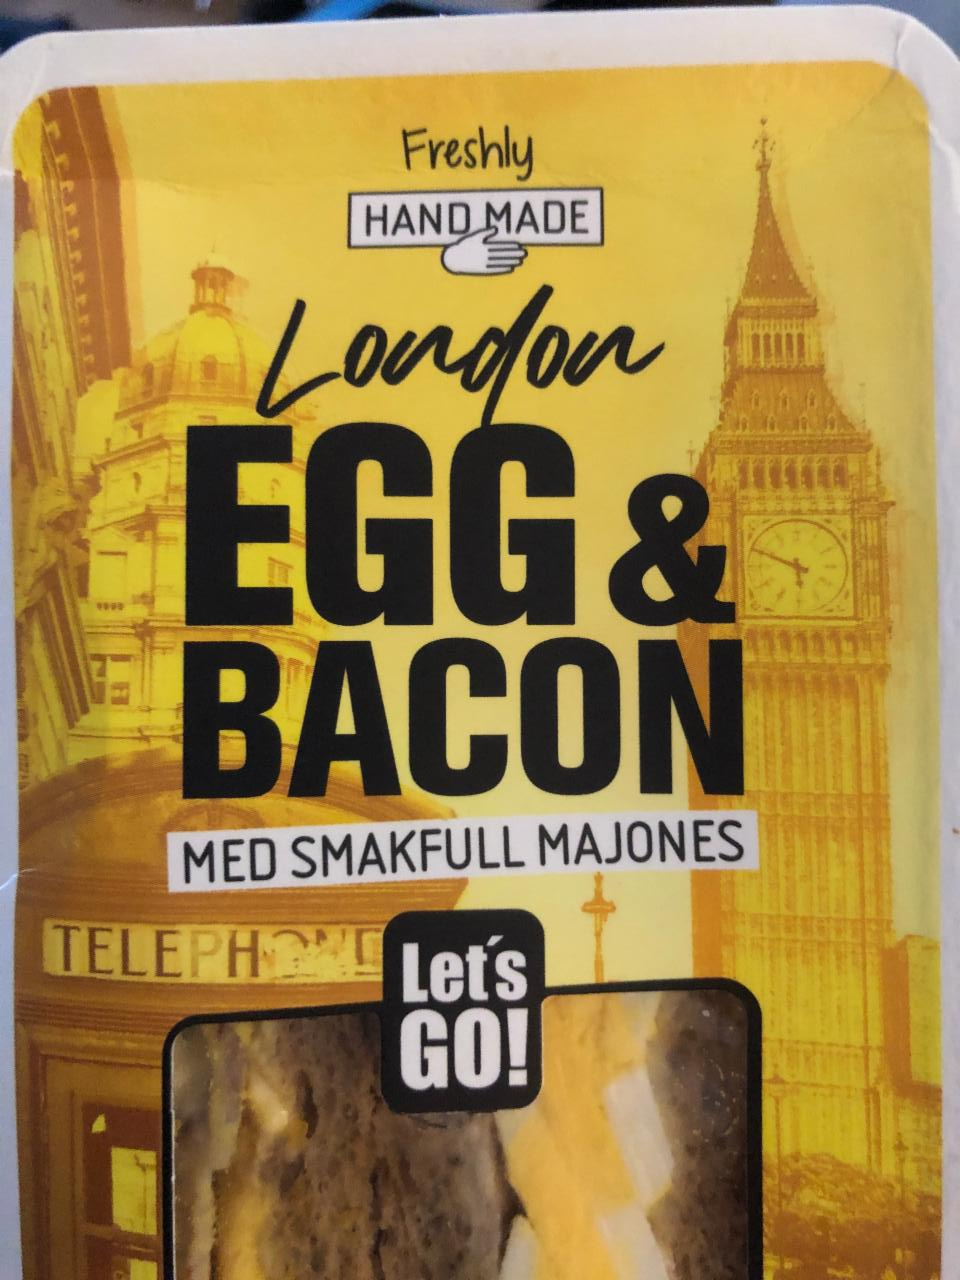 Fotografie - Let’s go! London Egg & Bacon